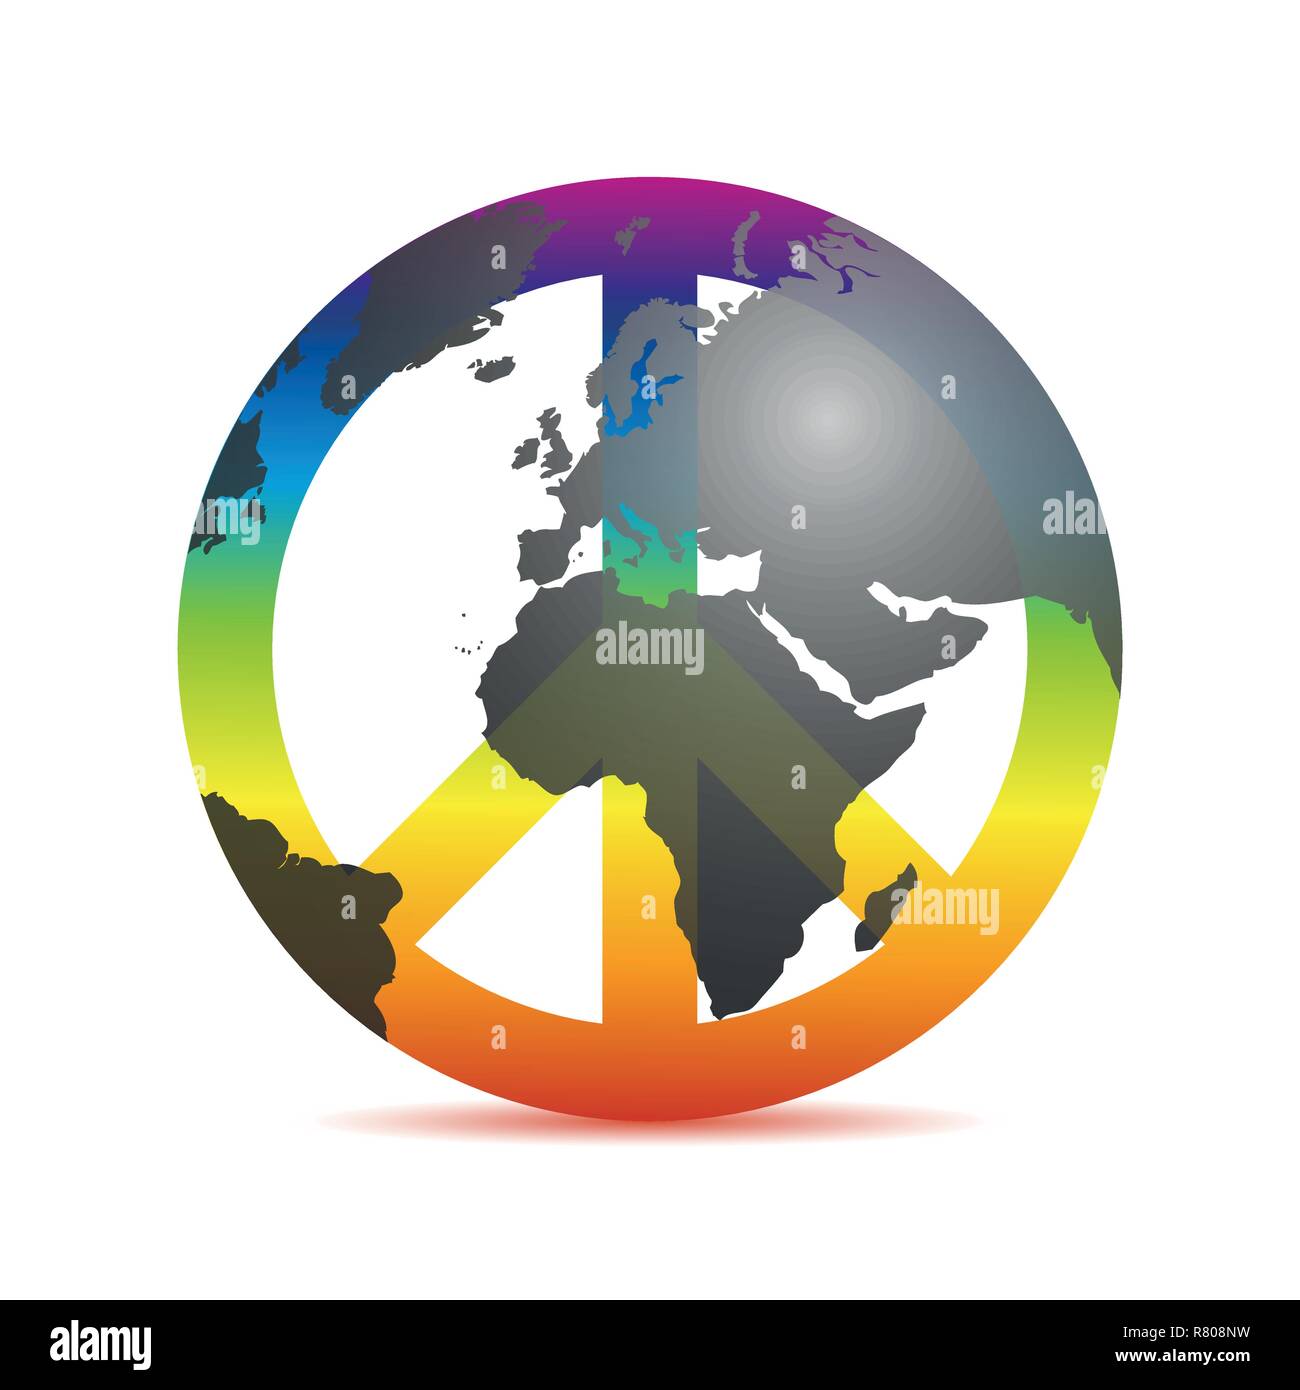 La pace universale colorata con il simbolo di messa a terra nei colori dell'arcobaleno illustrazione vettoriale EPS10 Illustrazione Vettoriale